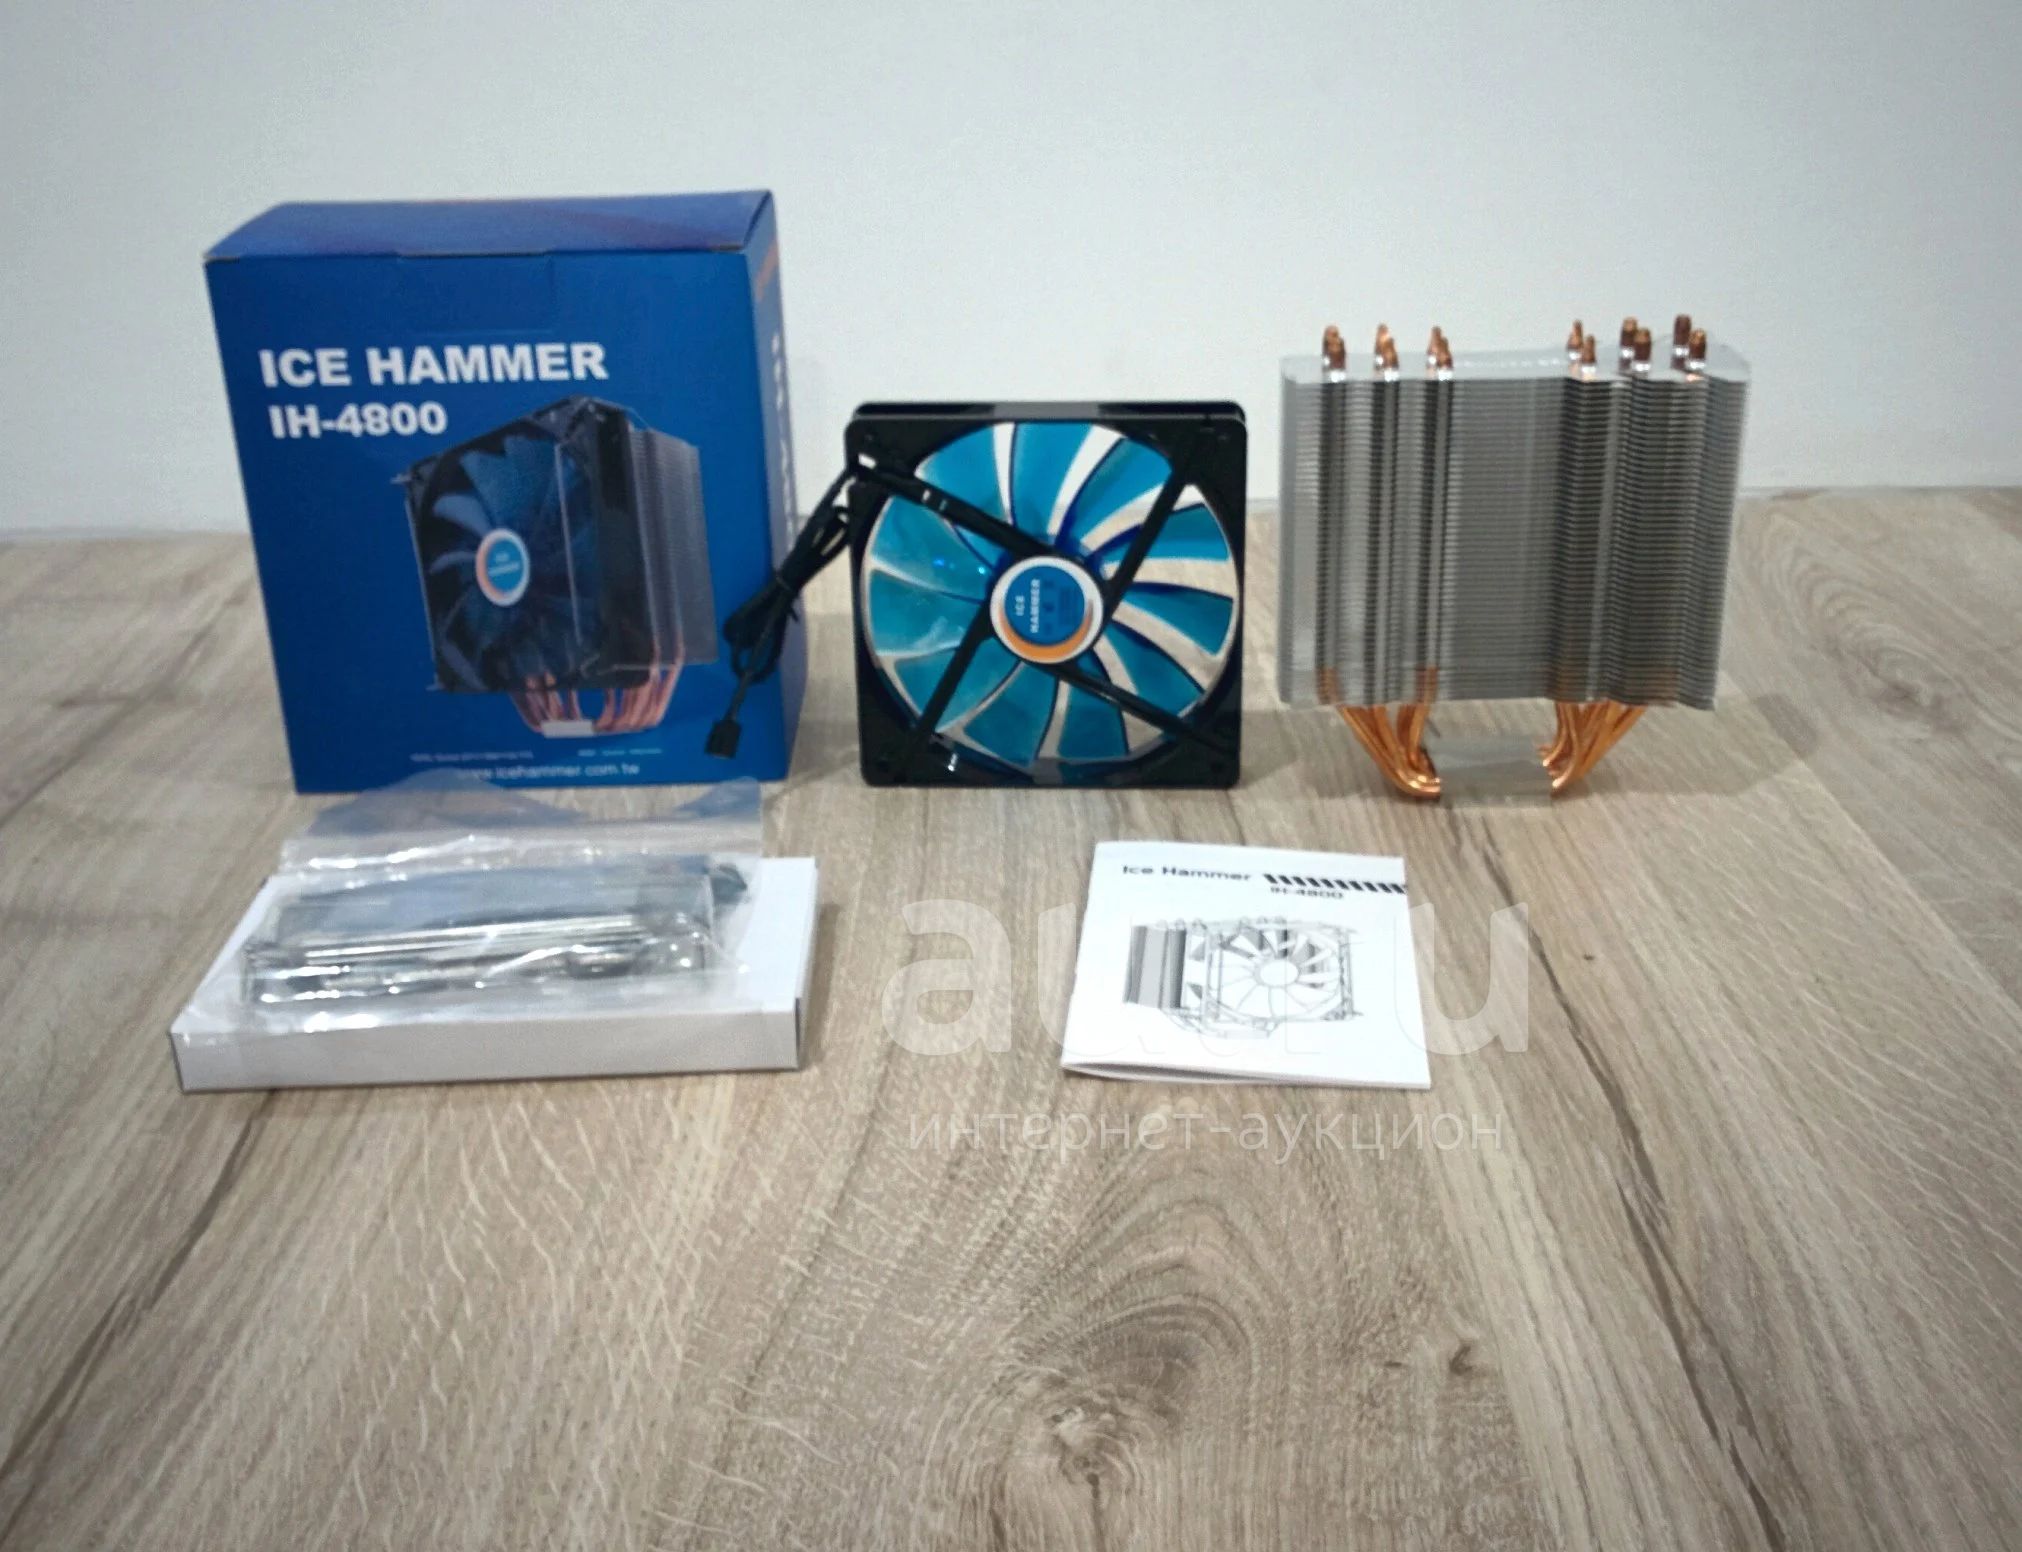 Кулер Ice Hammer IH-4800, новый в упаковке. — купить в Красноярске.  Состояние: Новое. Системы охлаждения на интернет-аукционе Au.ru